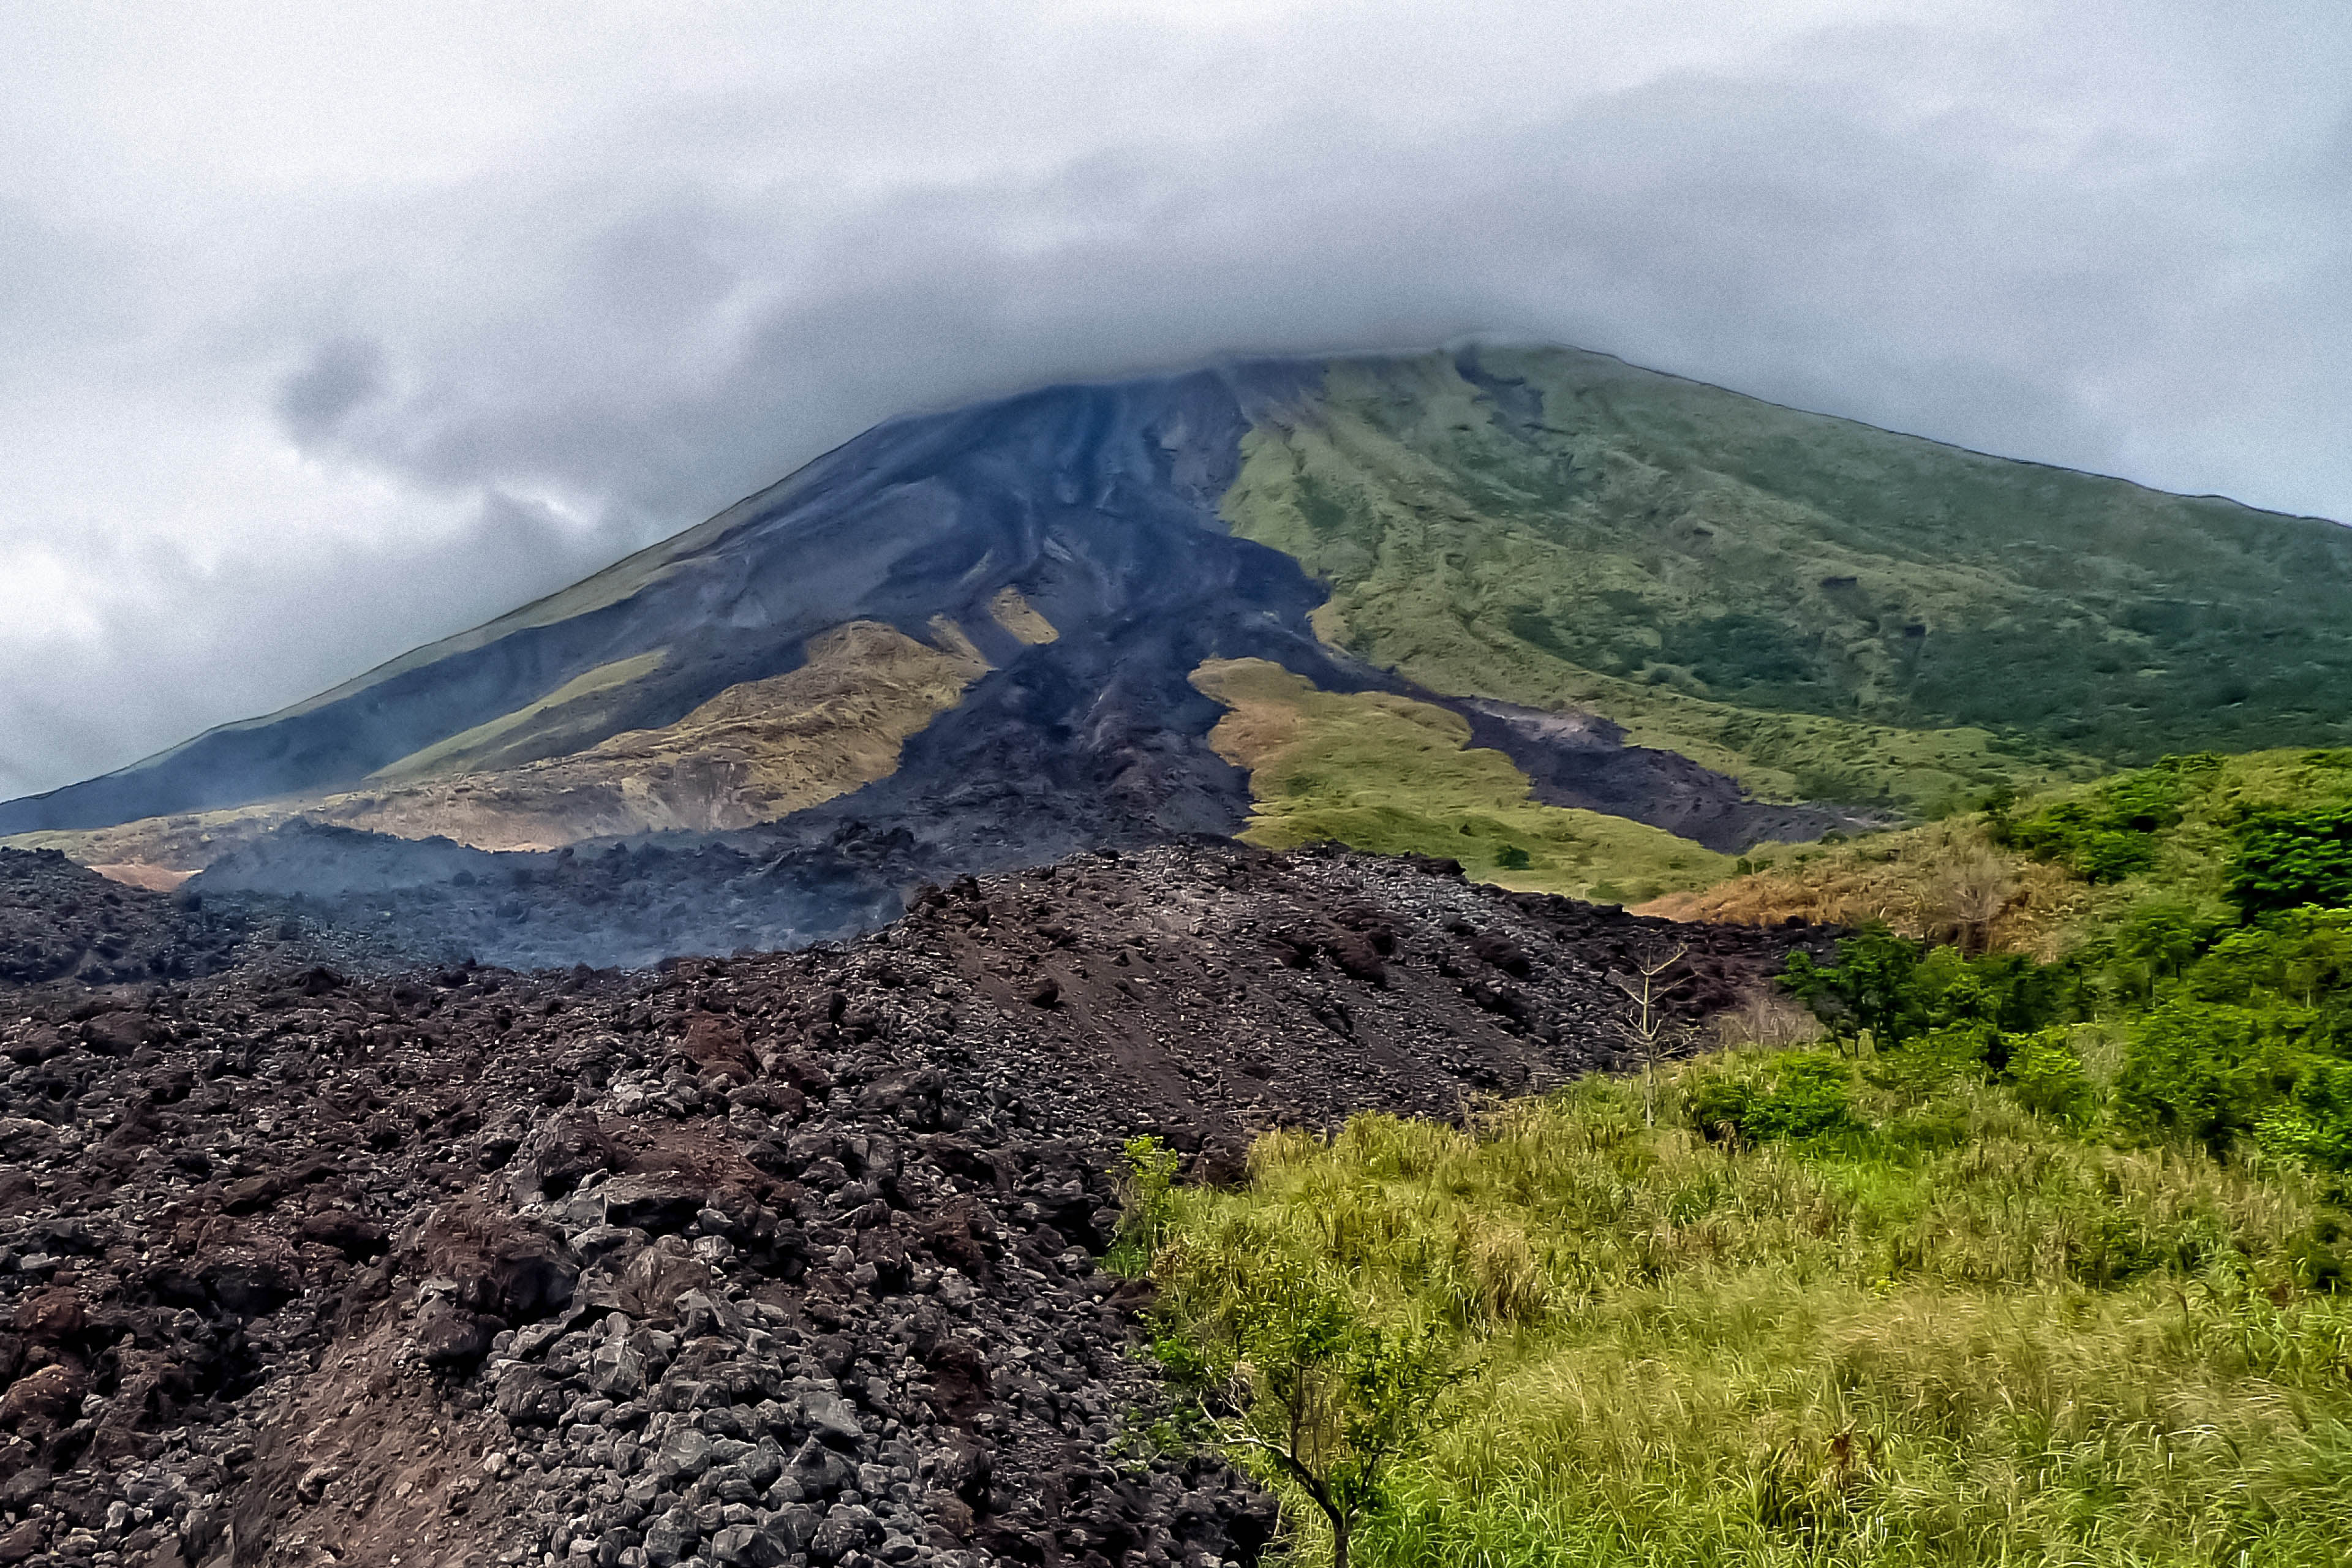 Lavapfad auf Vulkanboden